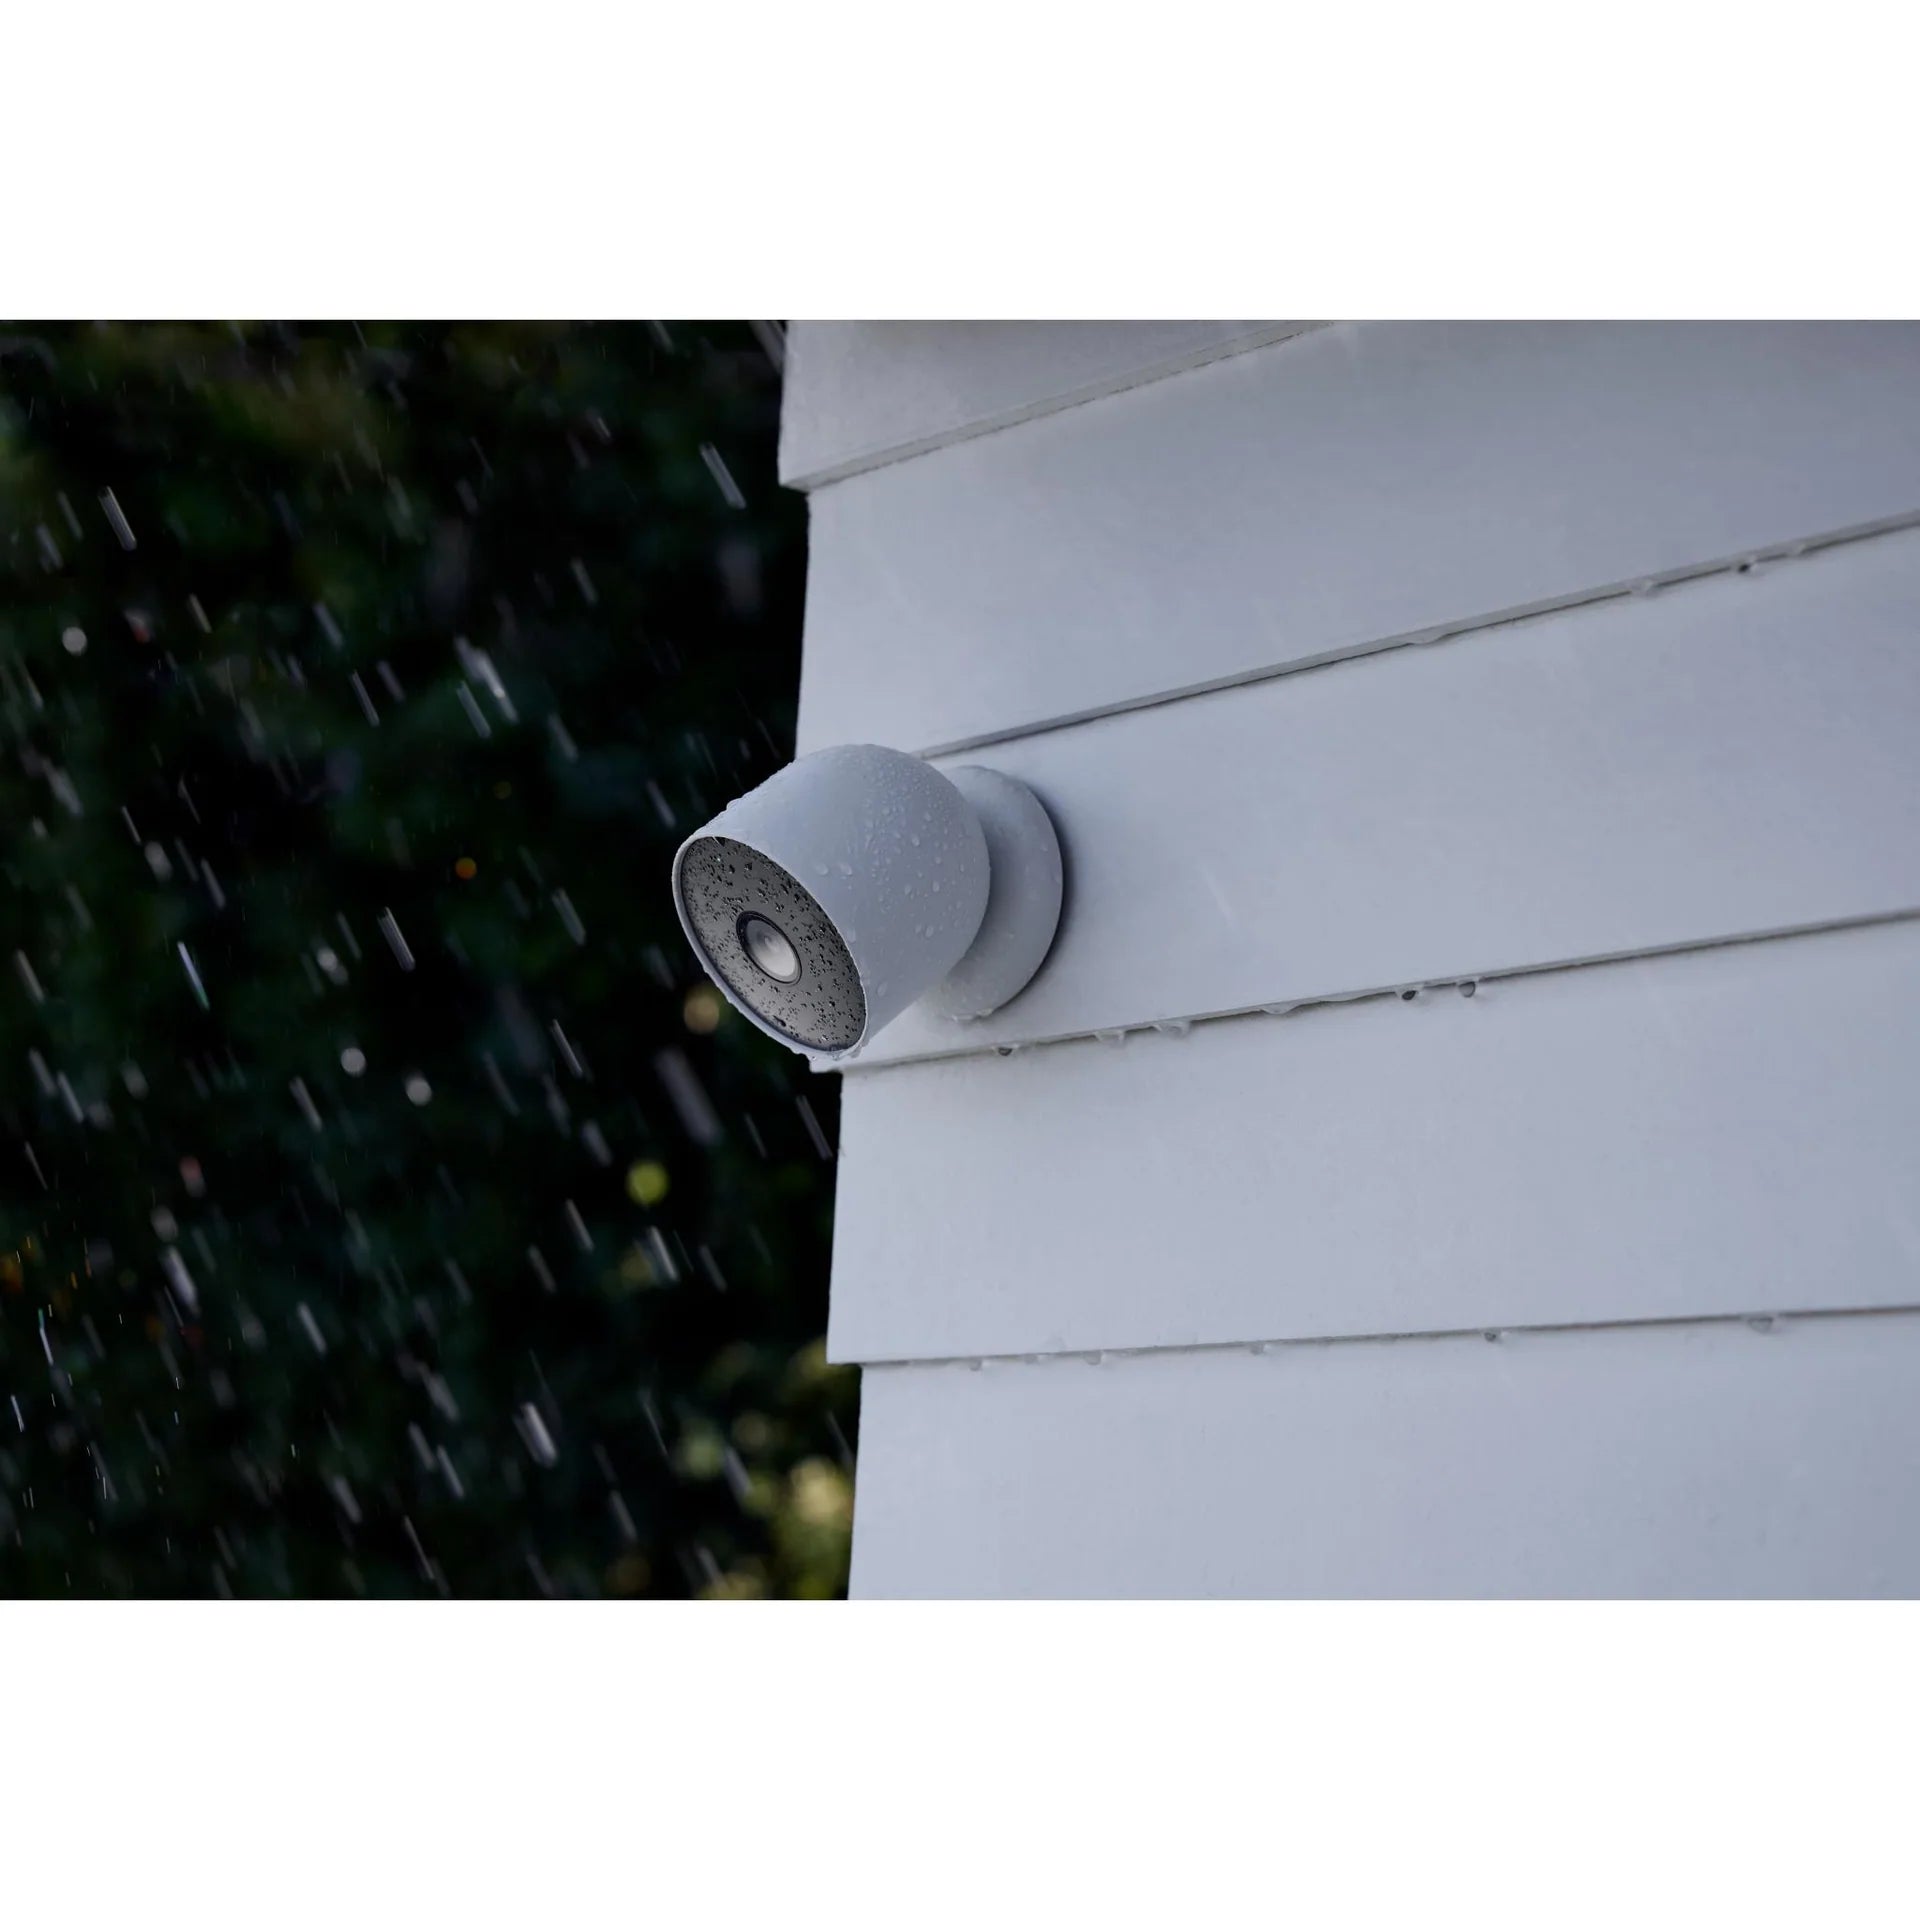 Google Nest Cam (Outdoor or Indoor, Battery) GA01317-AU